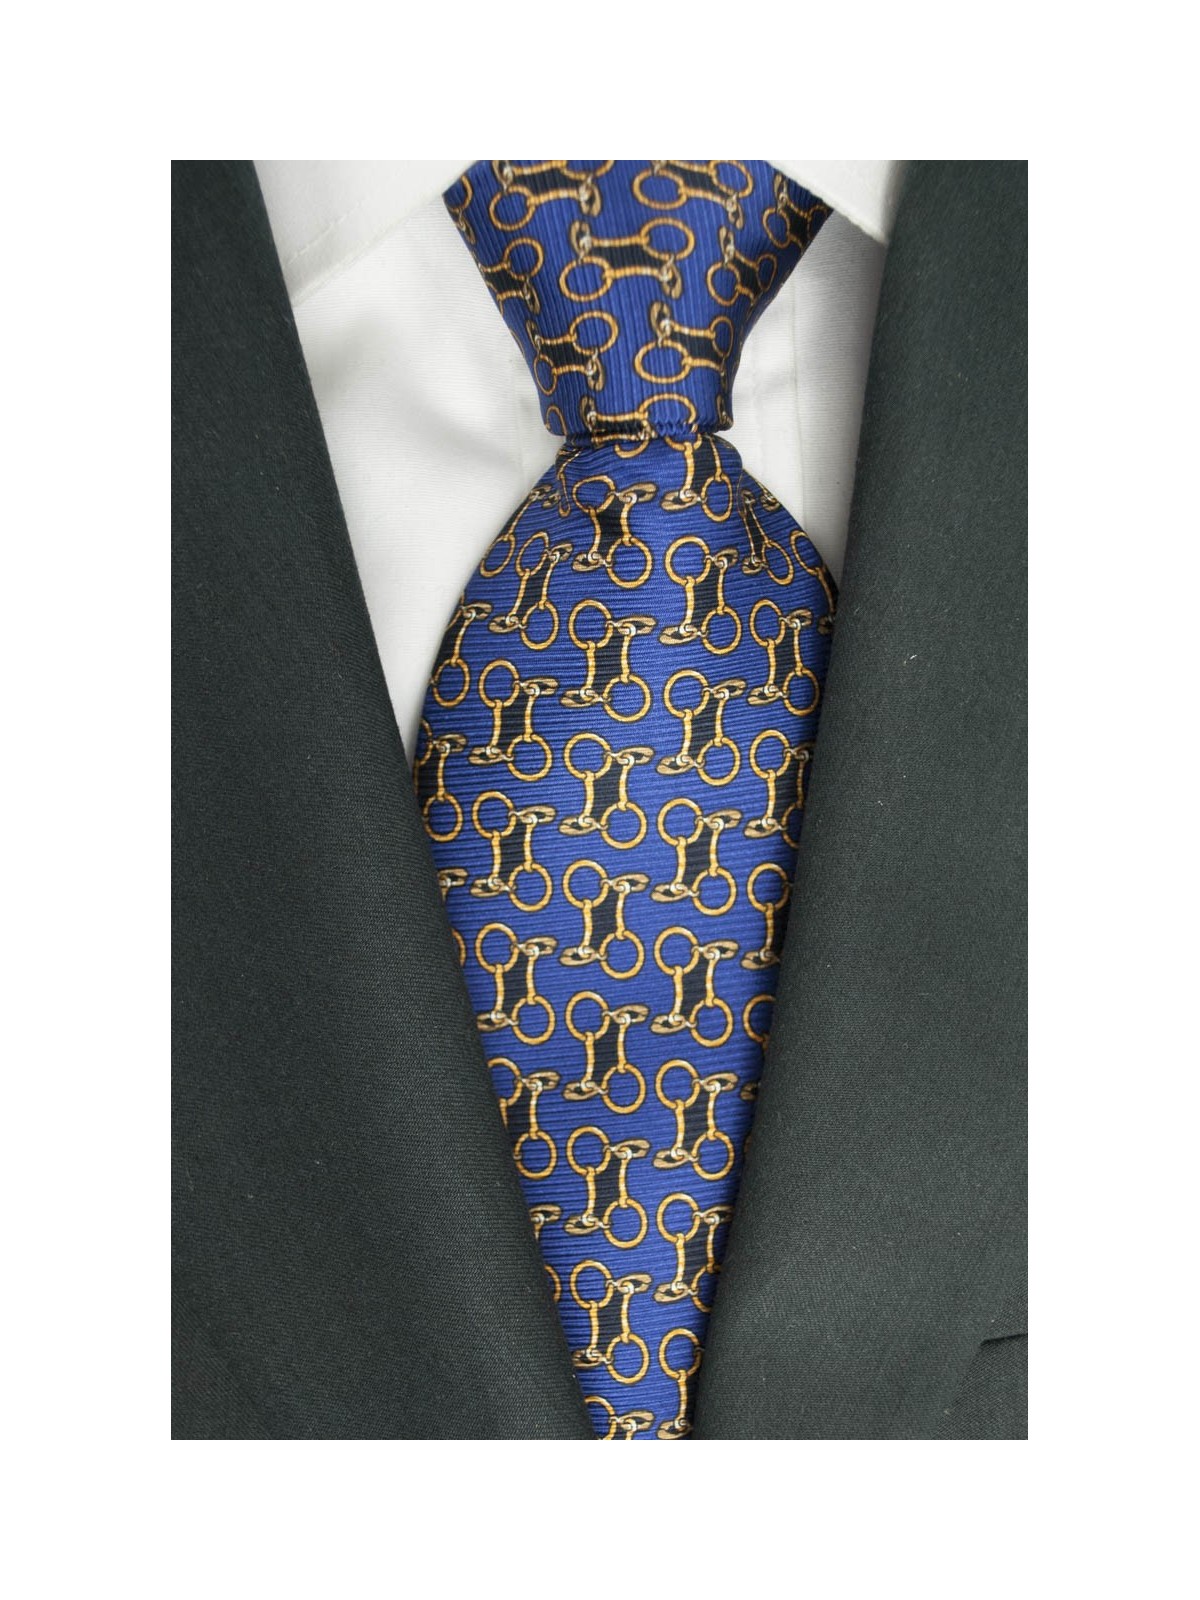 Blaue Krawatte Mit Kleinen Zeichnungen Lamborghini - 1018 - 100% Reine Seide